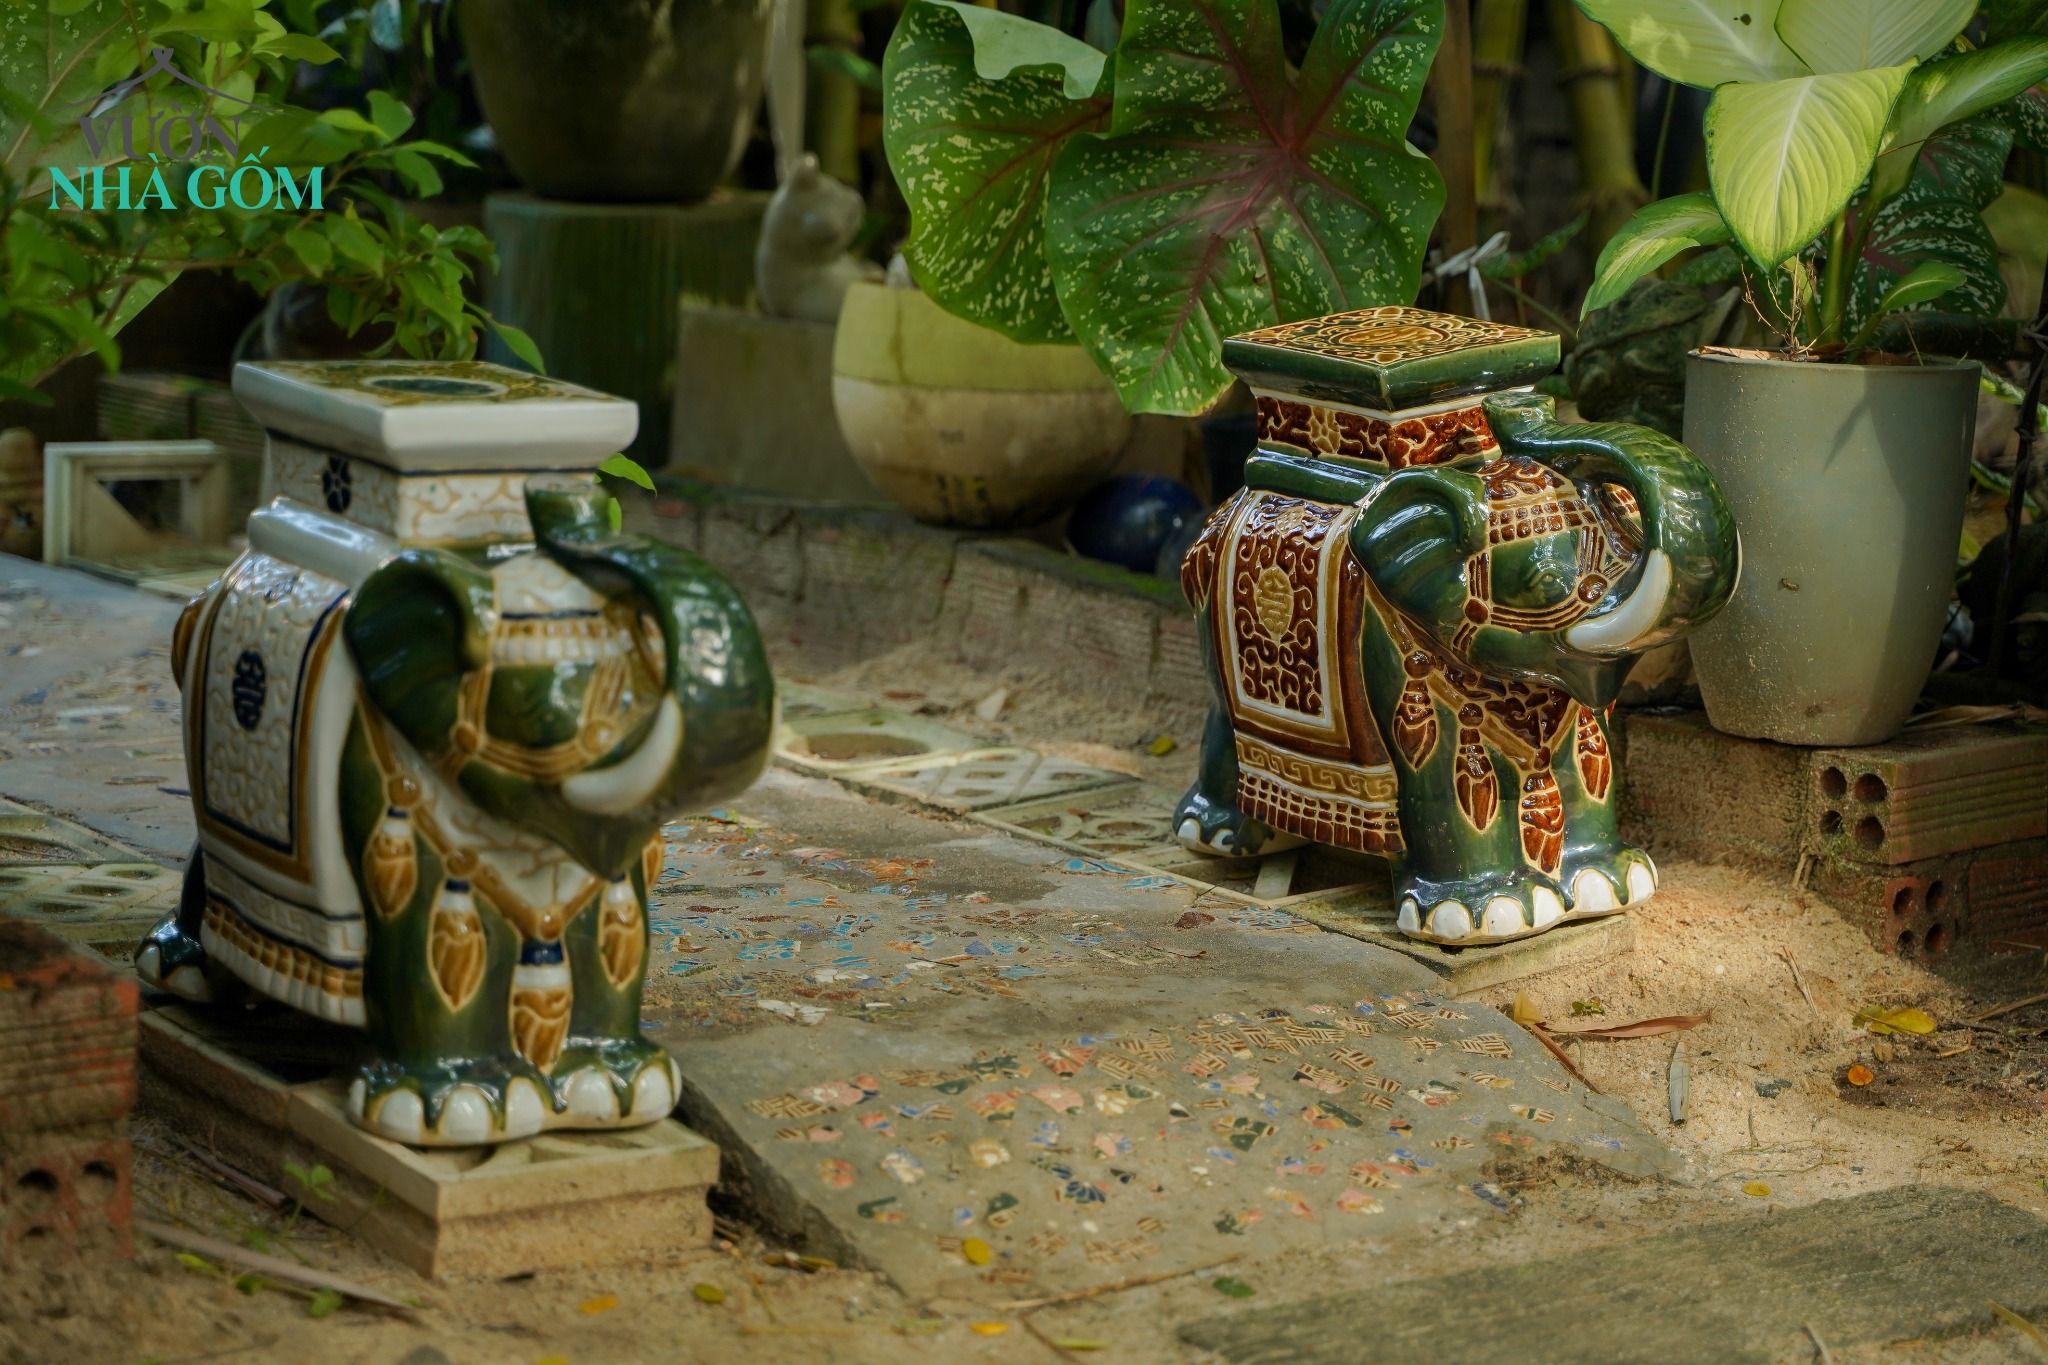  Đôn voi truyền thống, gốm Nam Bộ, gợi nhớ ký ức, nâu và nhiều màu sắc, C43 x R50cm 